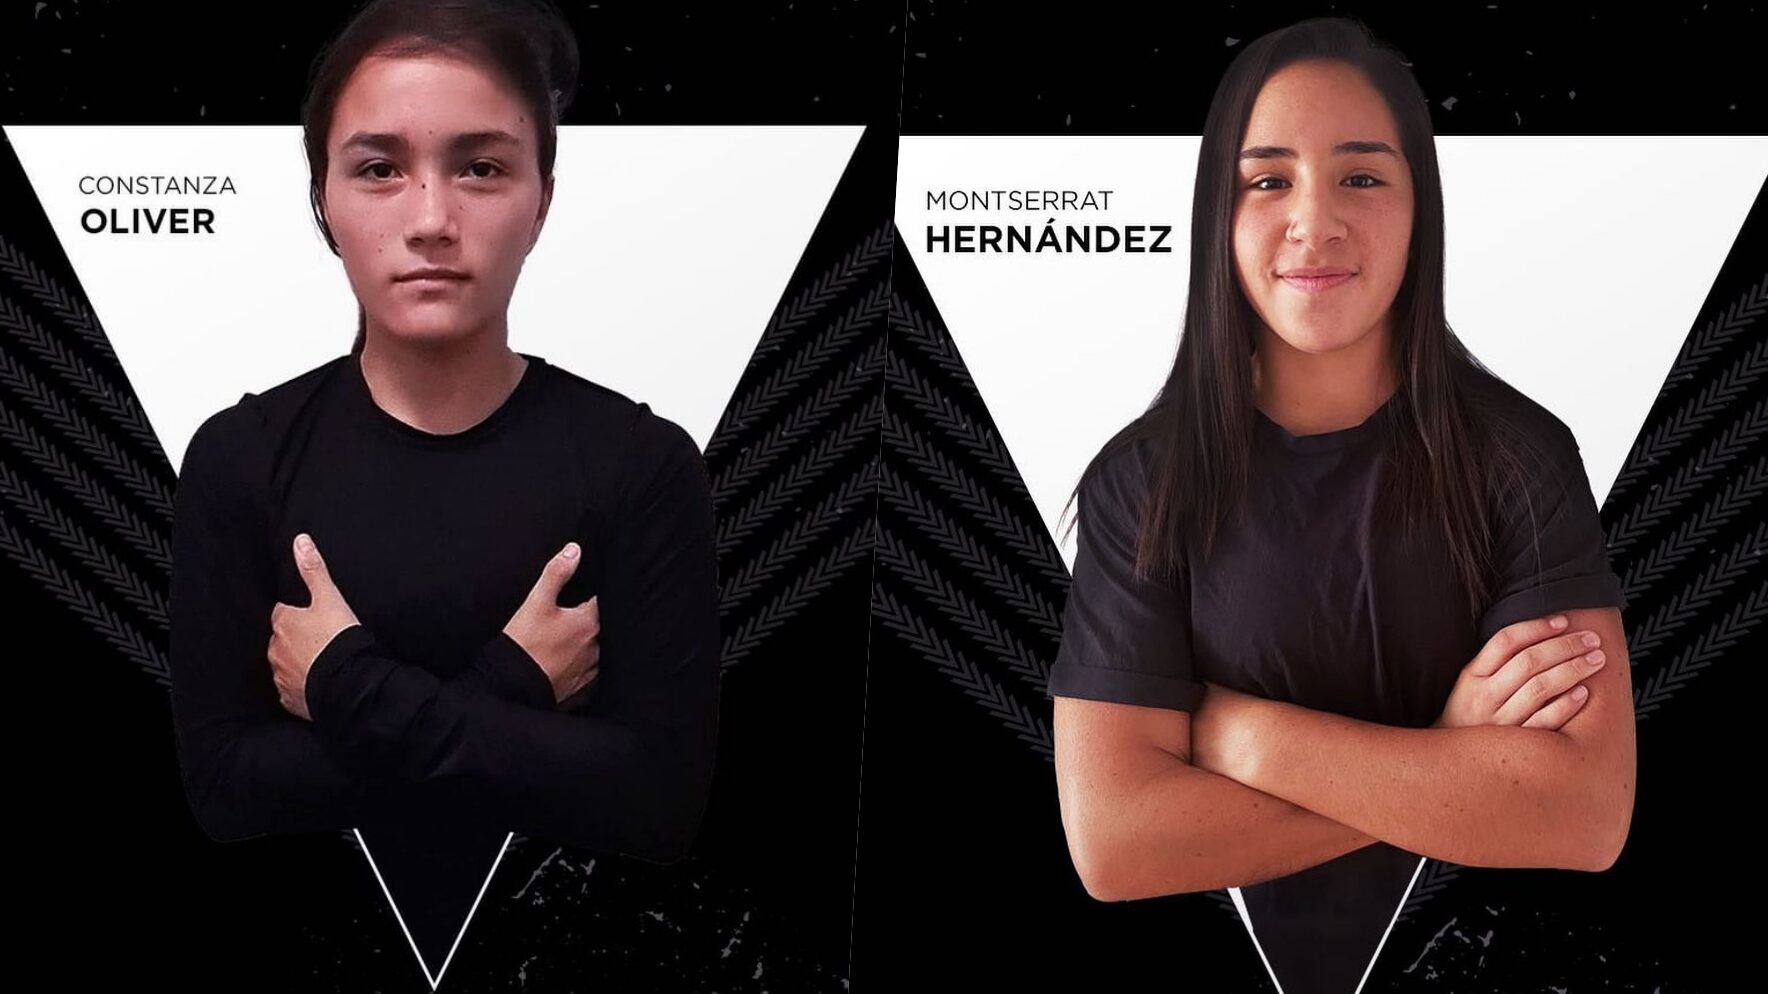 Santiago Morning oficializa dos nuevos nombres: Constanza Oliver y Montserrat Hernández